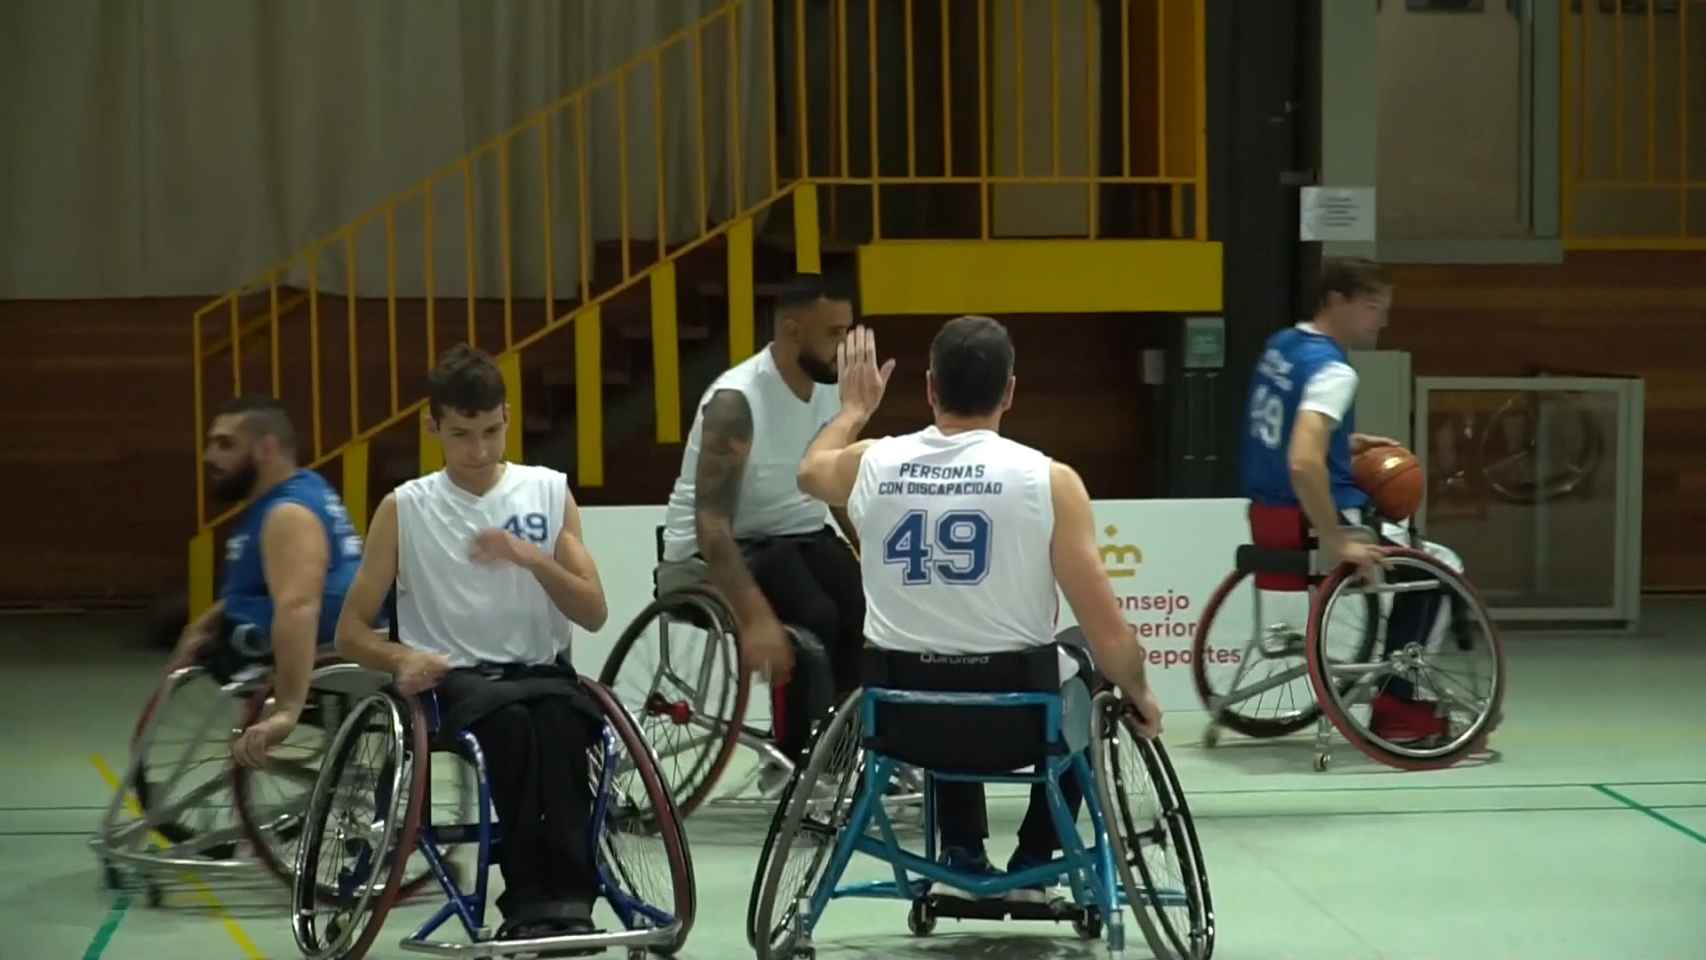 Sánchez, un jugador más en un partido de baloncesto en silla de ruedas